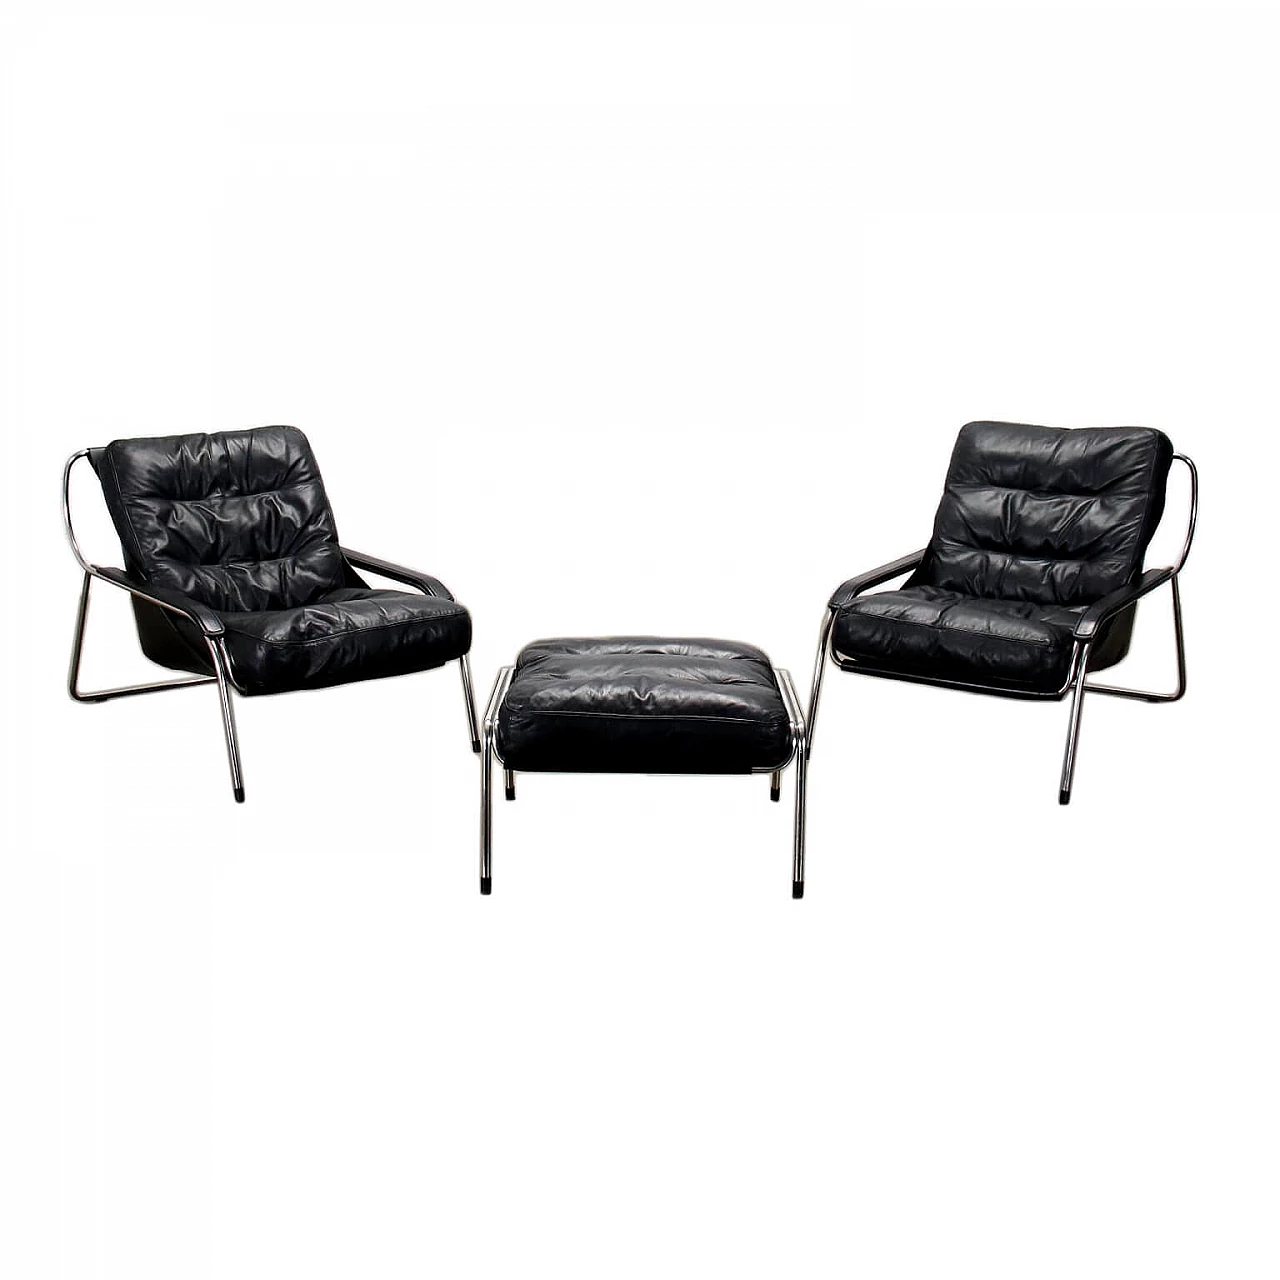 'Maggiolina' armchairs by Marco Zanuso for Zanotta 1452428